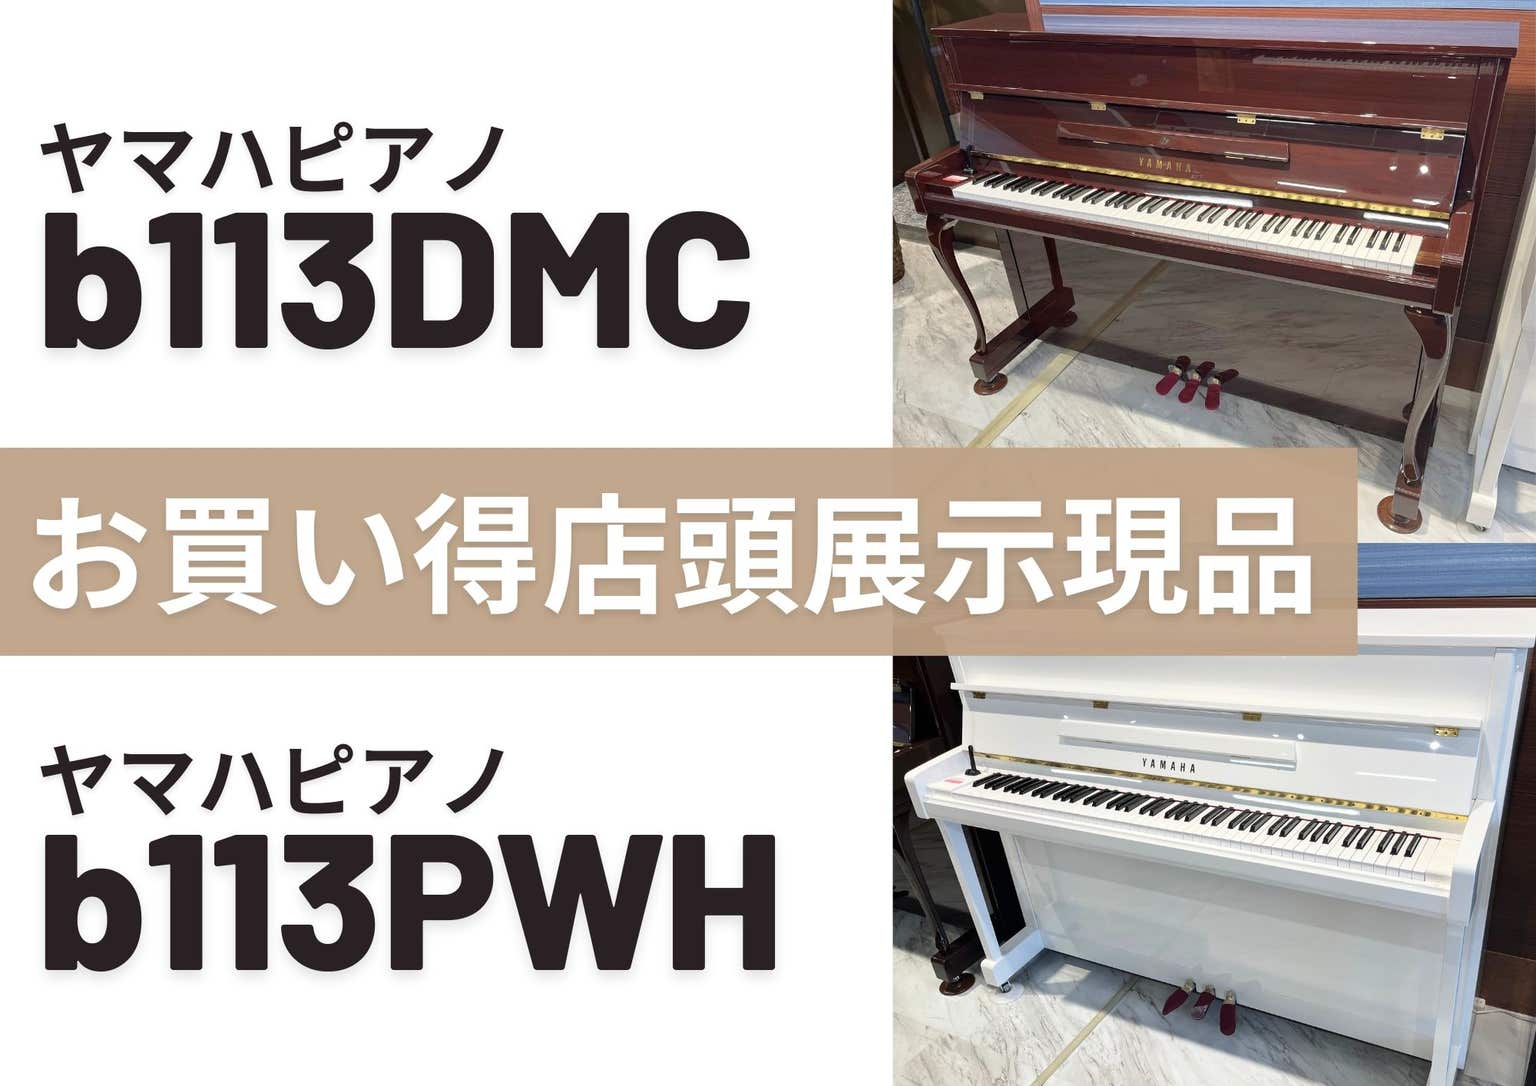 お買い得商品   新品ピアノ【b113DMC 】【b113PWH 】
展示現品 特価